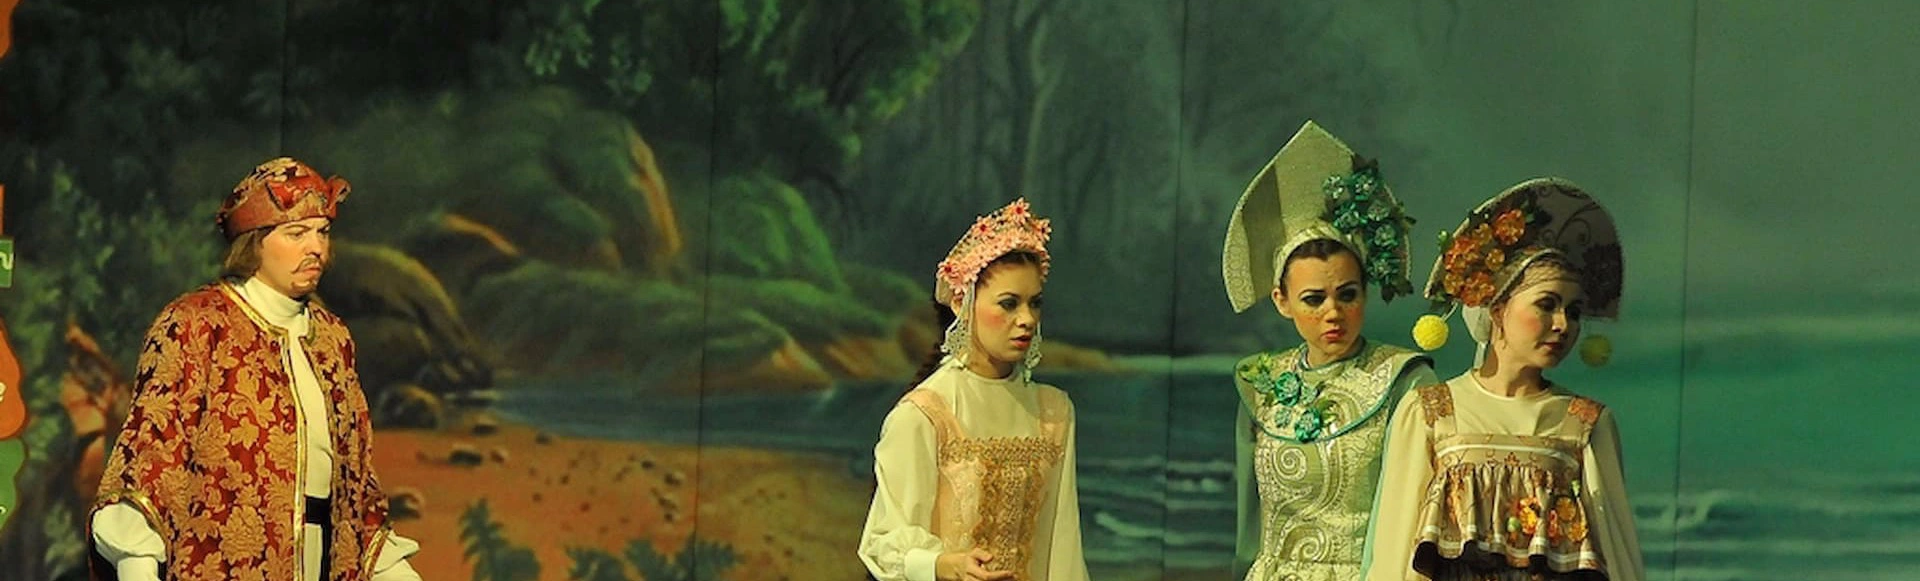 Сказка Сергея Аксакова «Аленький цветочек» на сцене театра комедий
